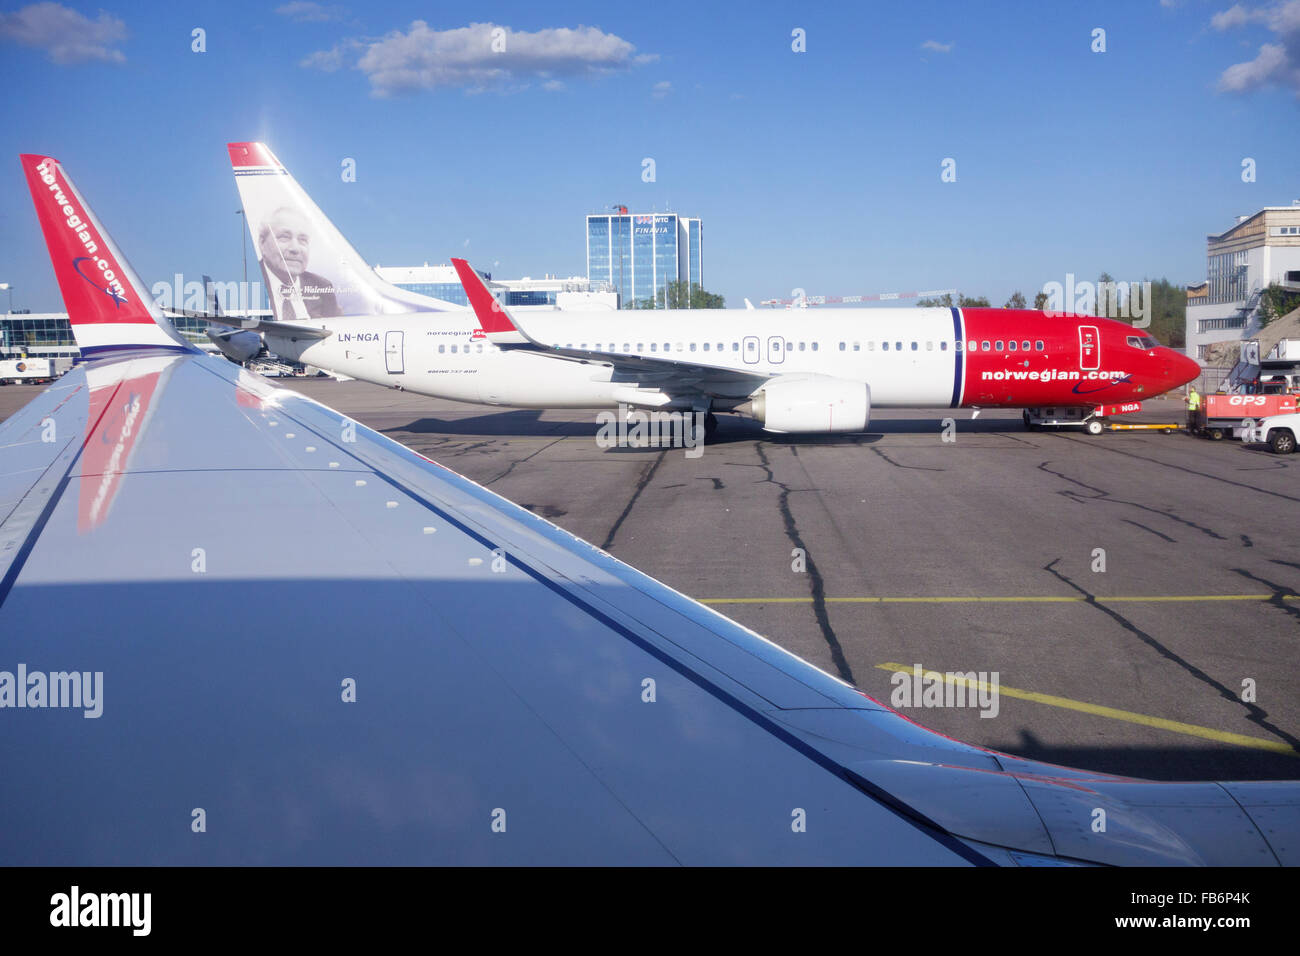 Norwegian Airlines Boeing 737-800 kurze/mittlere Flug Flugzeug auf dem Vorfeld des Flughafen Helsinki, Helsinki, Finnland Stockfoto